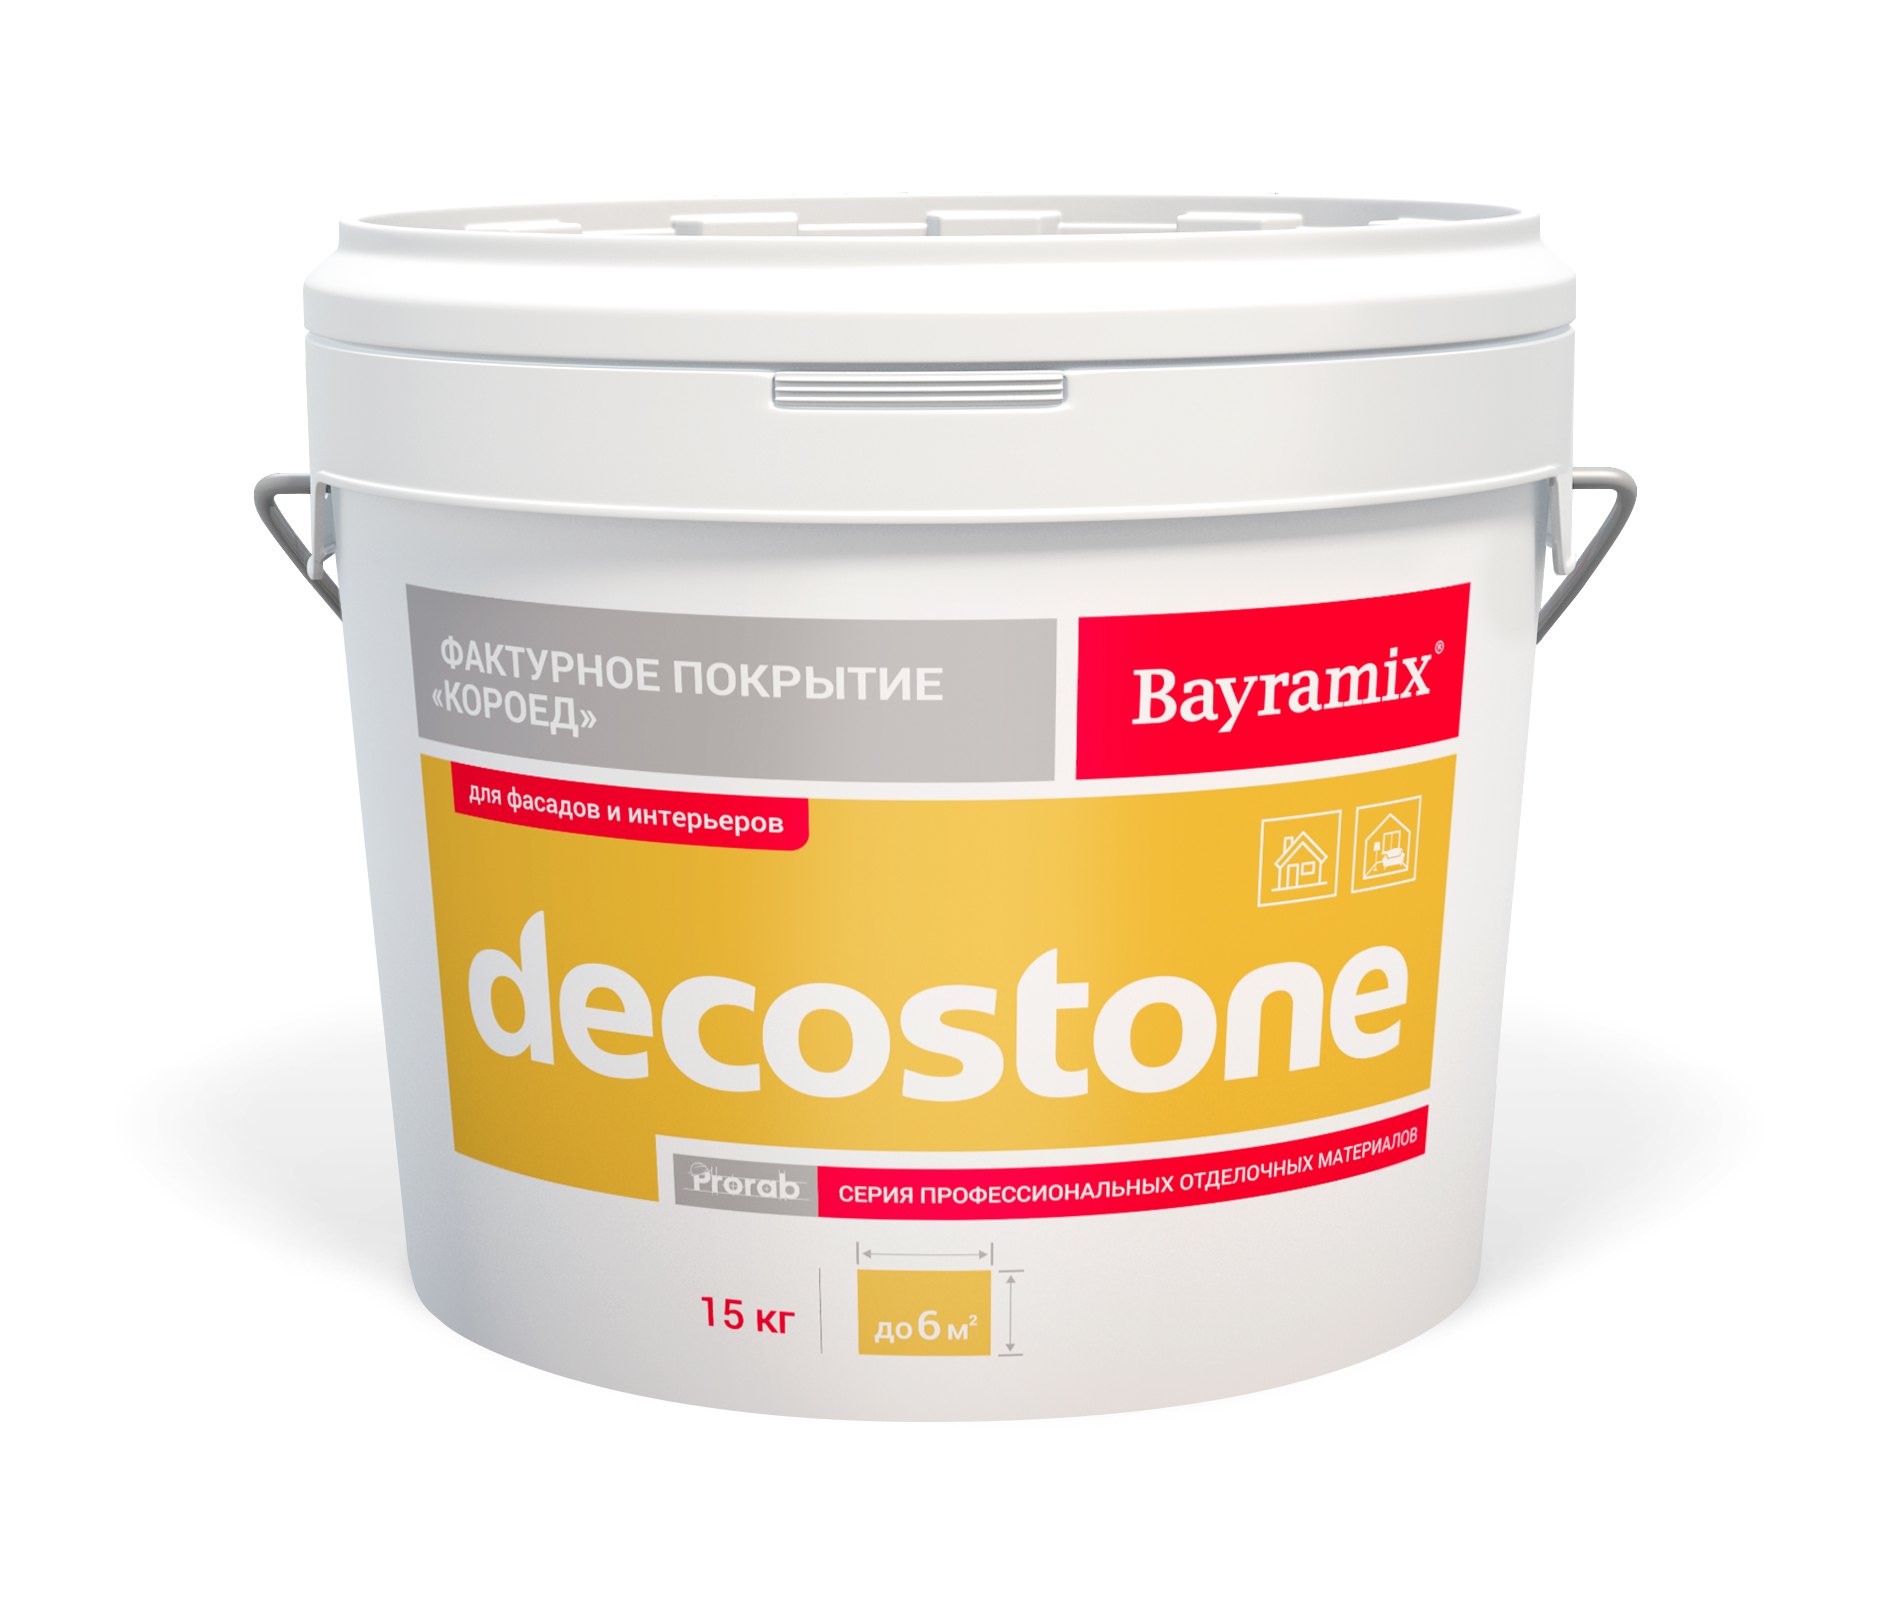 Покрытие Bayramix DECOSTONE 001 K, фактурное, 15 кг